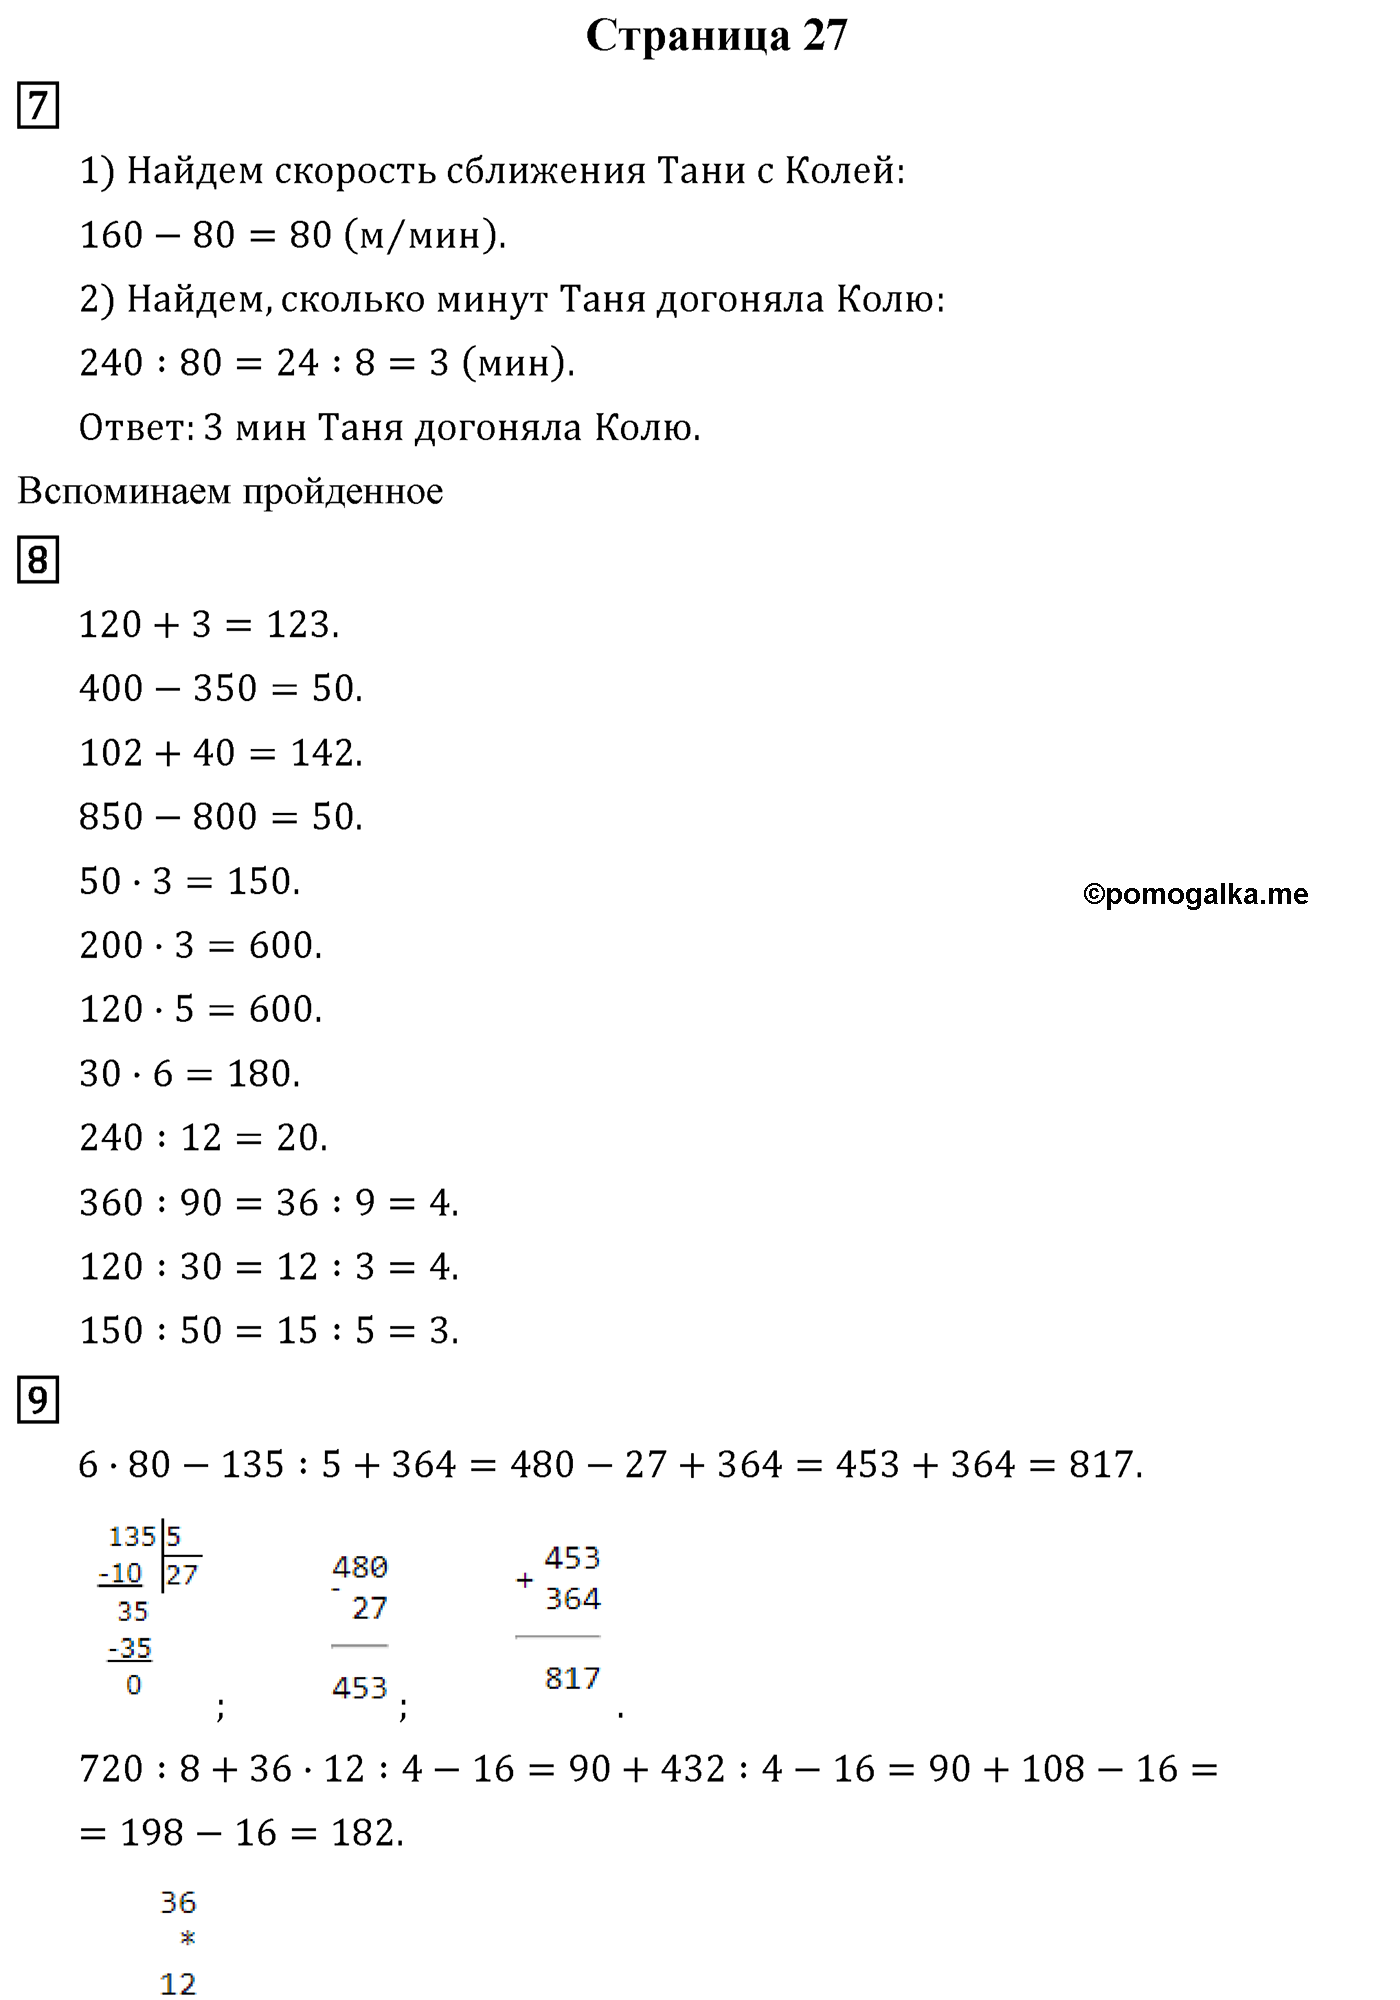 ГДЗ по Математике 4 класс рабочая тетрадь Рудницкая, Юдачева часть 1, часть 2